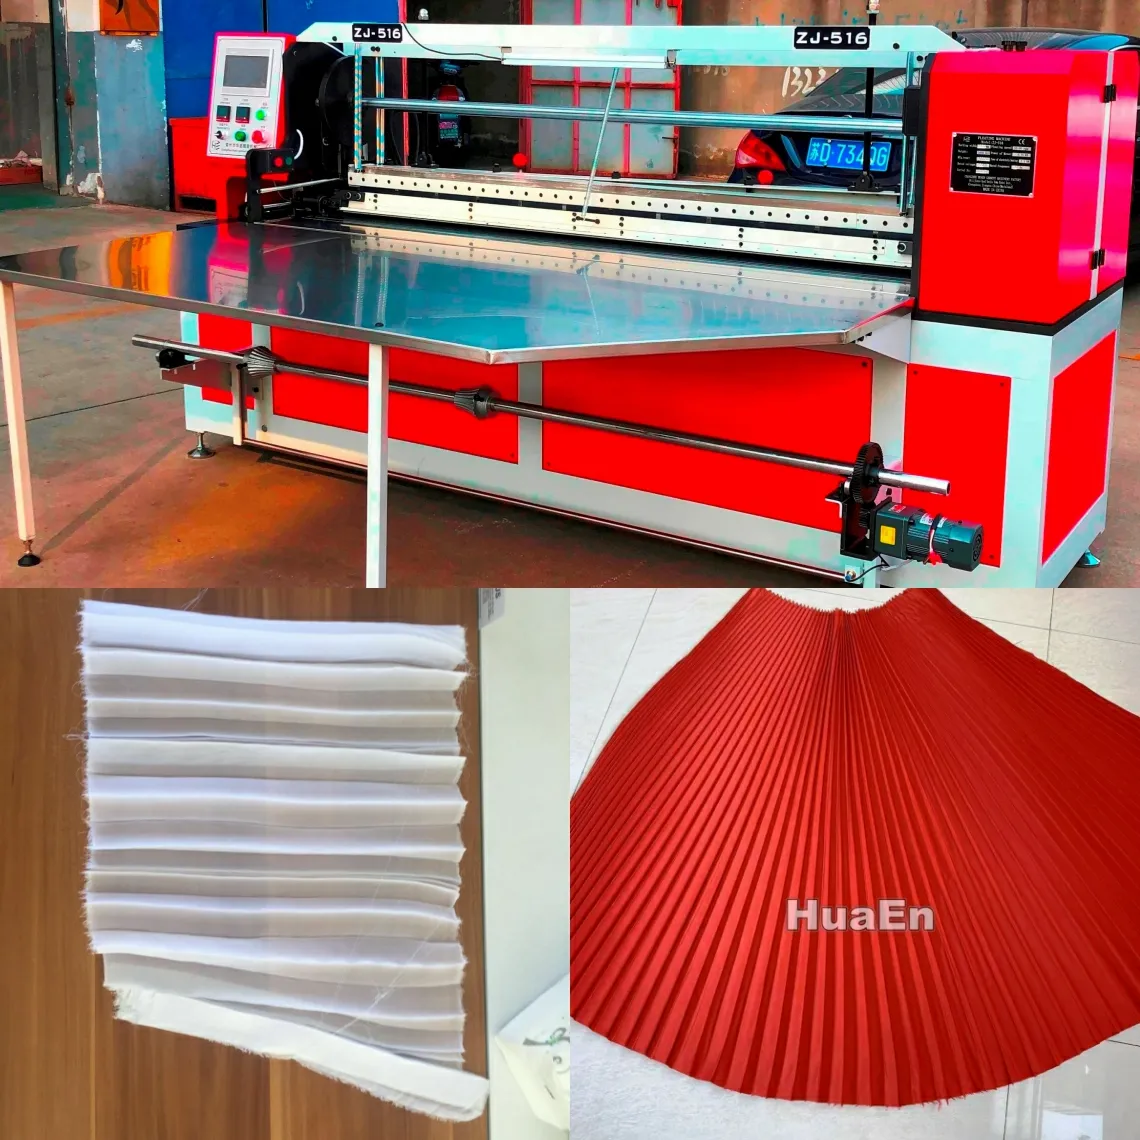 Fabricante HuaEn, máquina plisadora de tela dos en uno, acordeón ciego, rayos solares, máquina plisadora de tela, precio